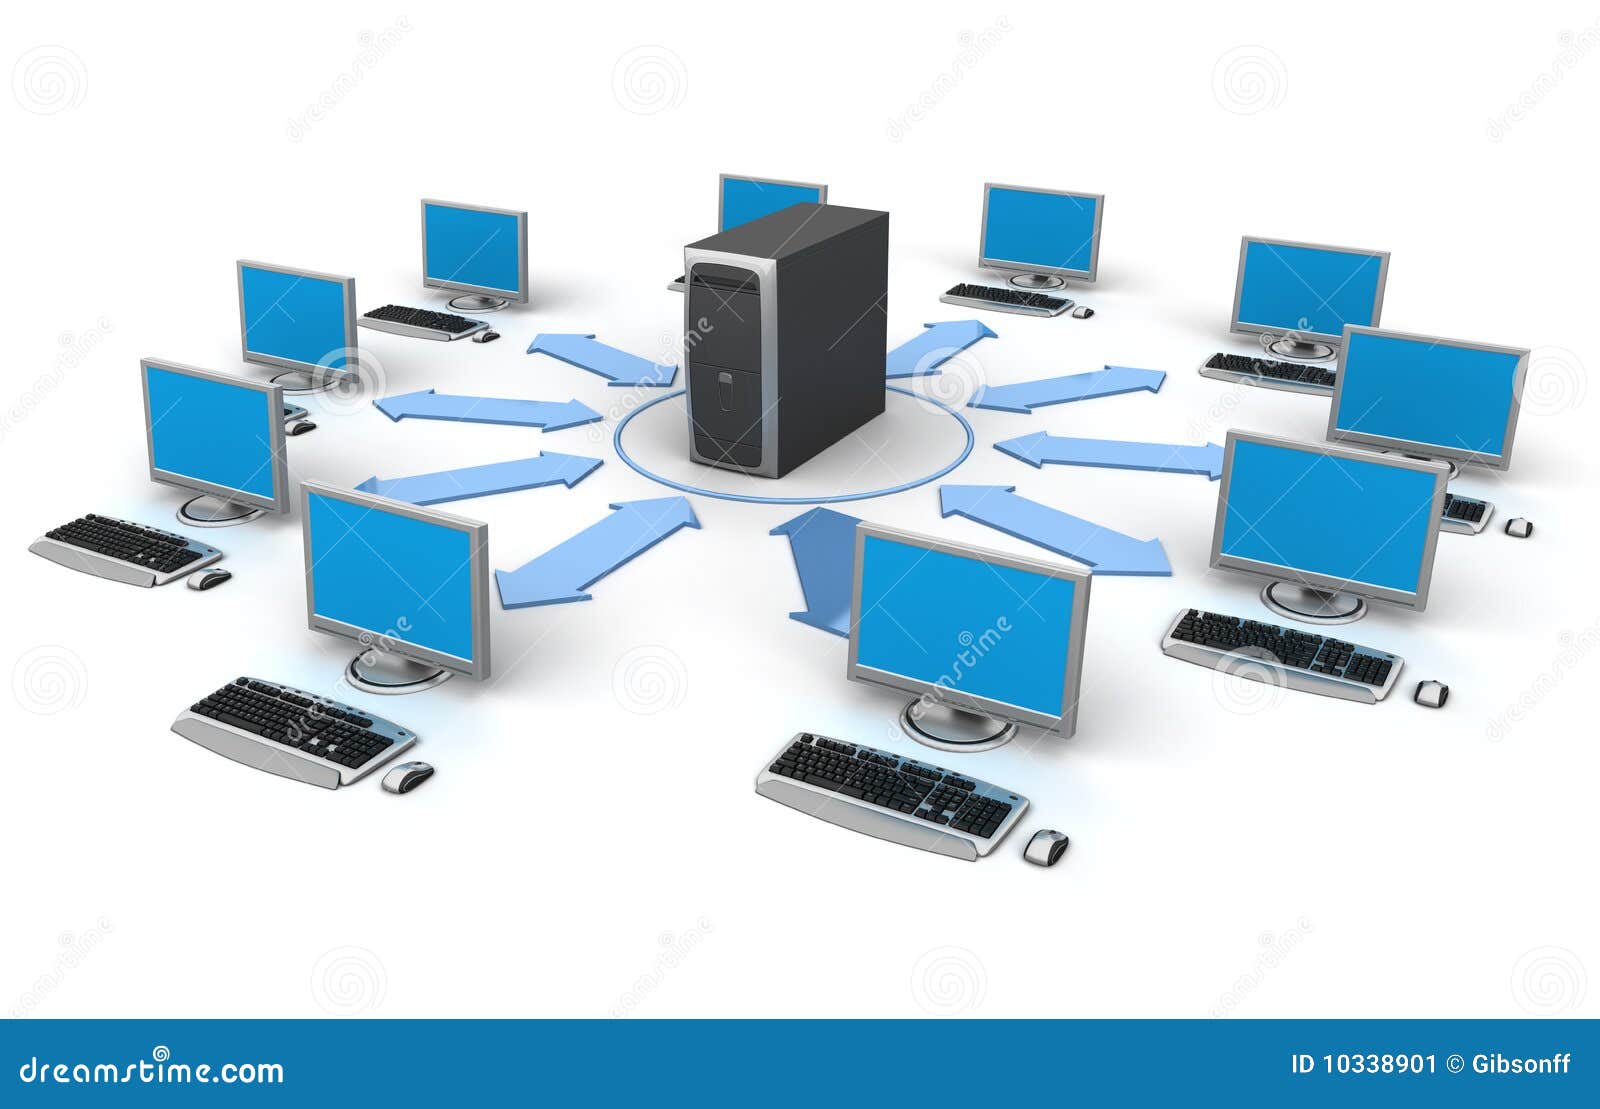 Het Netwerk Van Computer Stock Illustratie - Illustration of laptop: 10338901